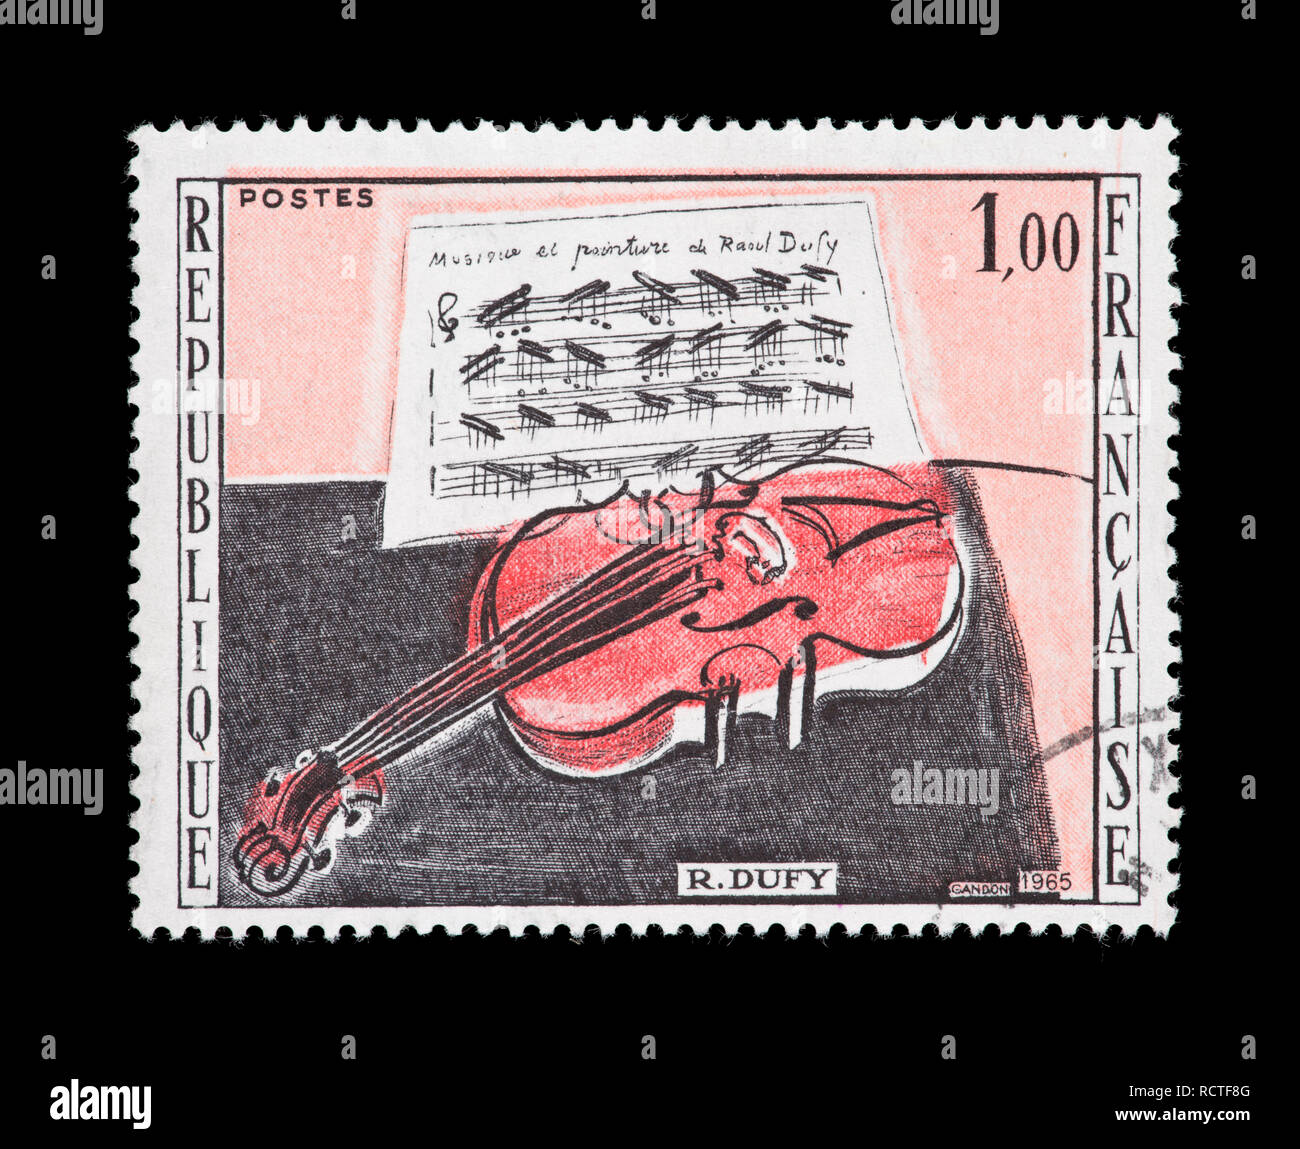 Timbre-poste de France illustrant la peinture de Raoul Dufy Le Violon rouge Banque D'Images